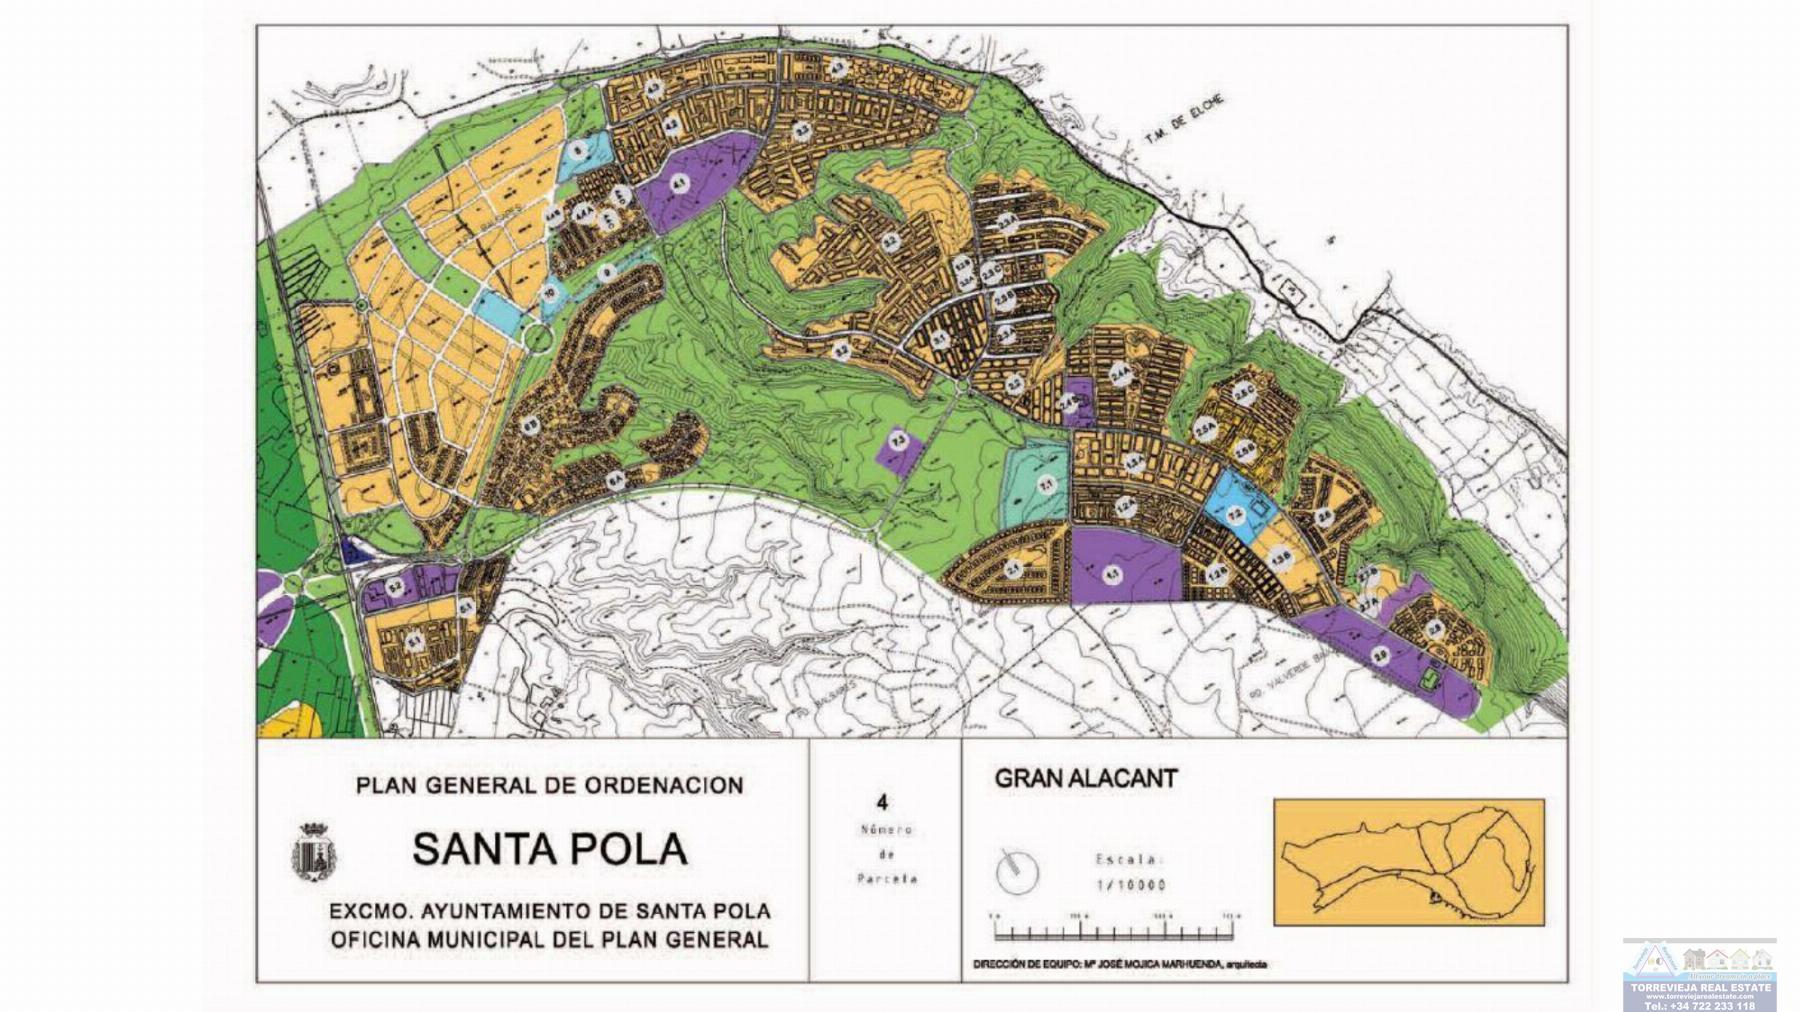 For sale of land in Santa Pola